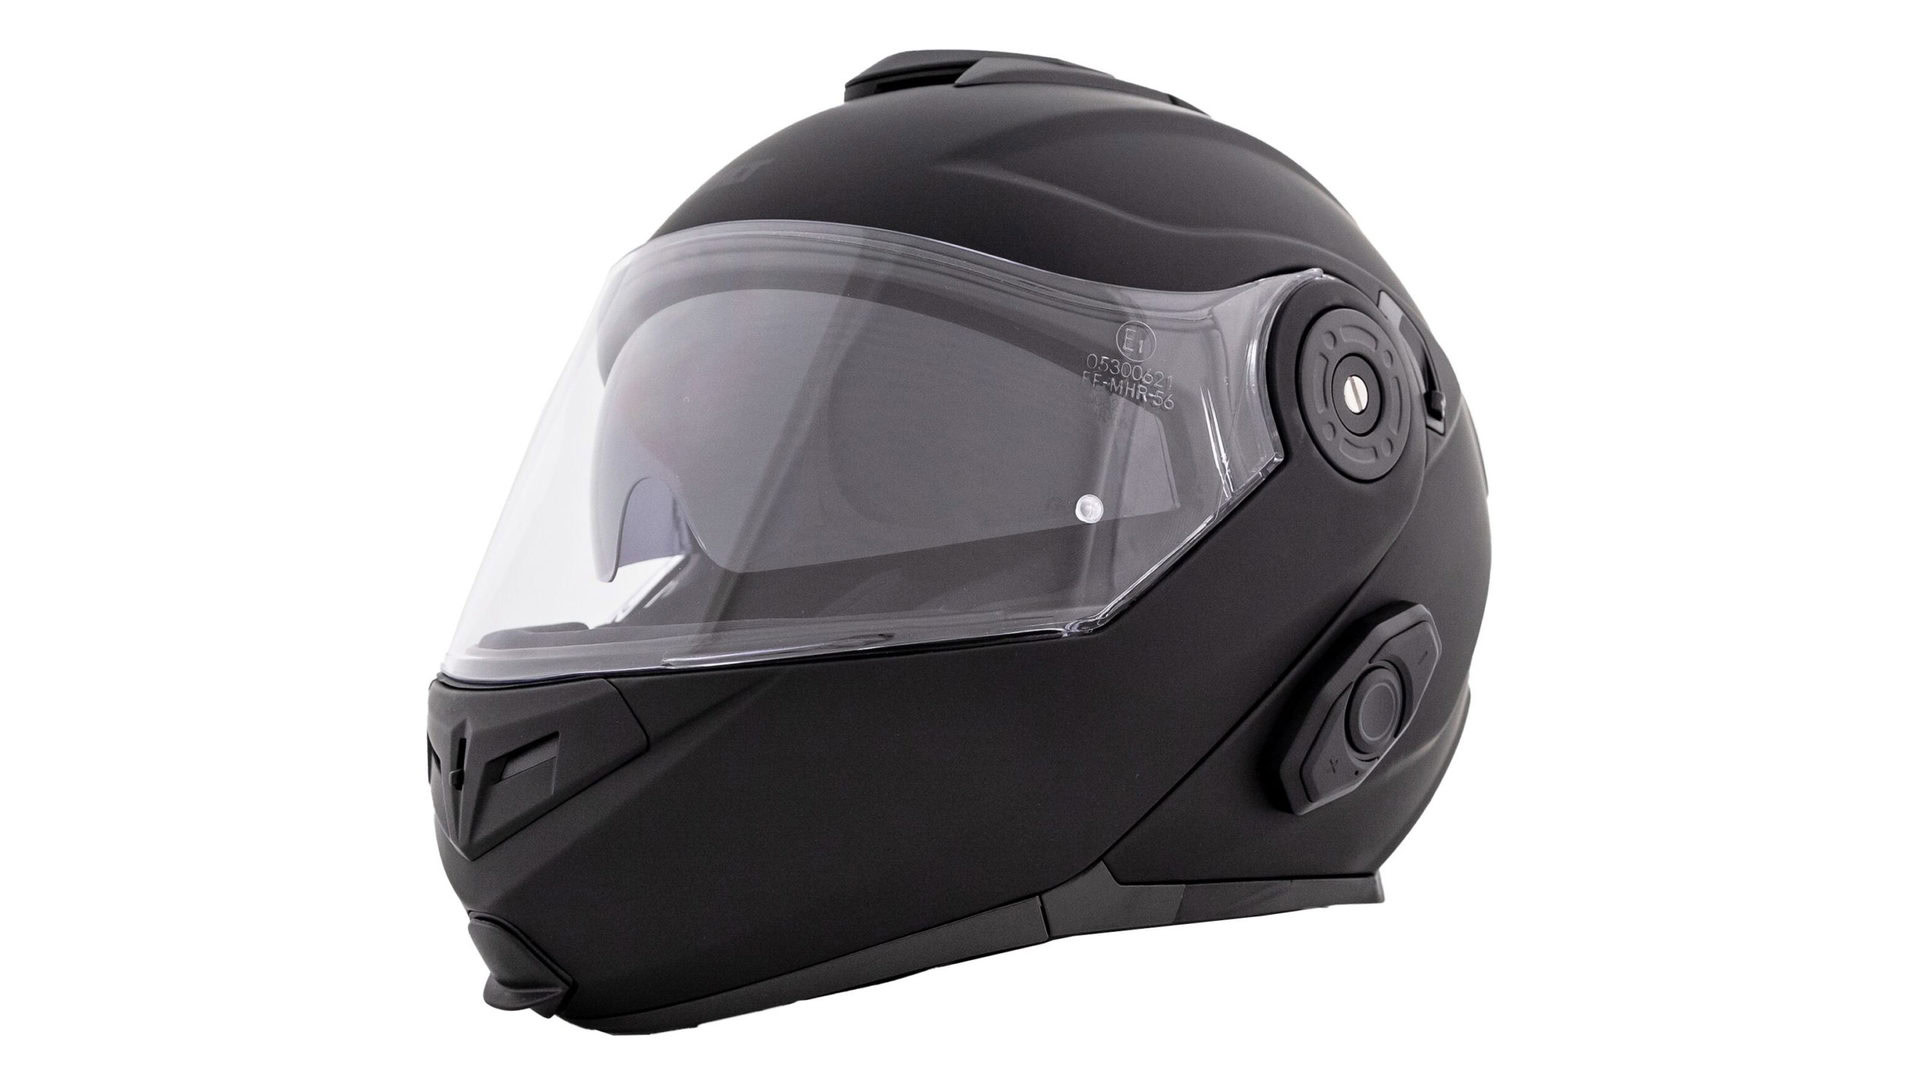 Bilt Techno 3.0 smart helmet